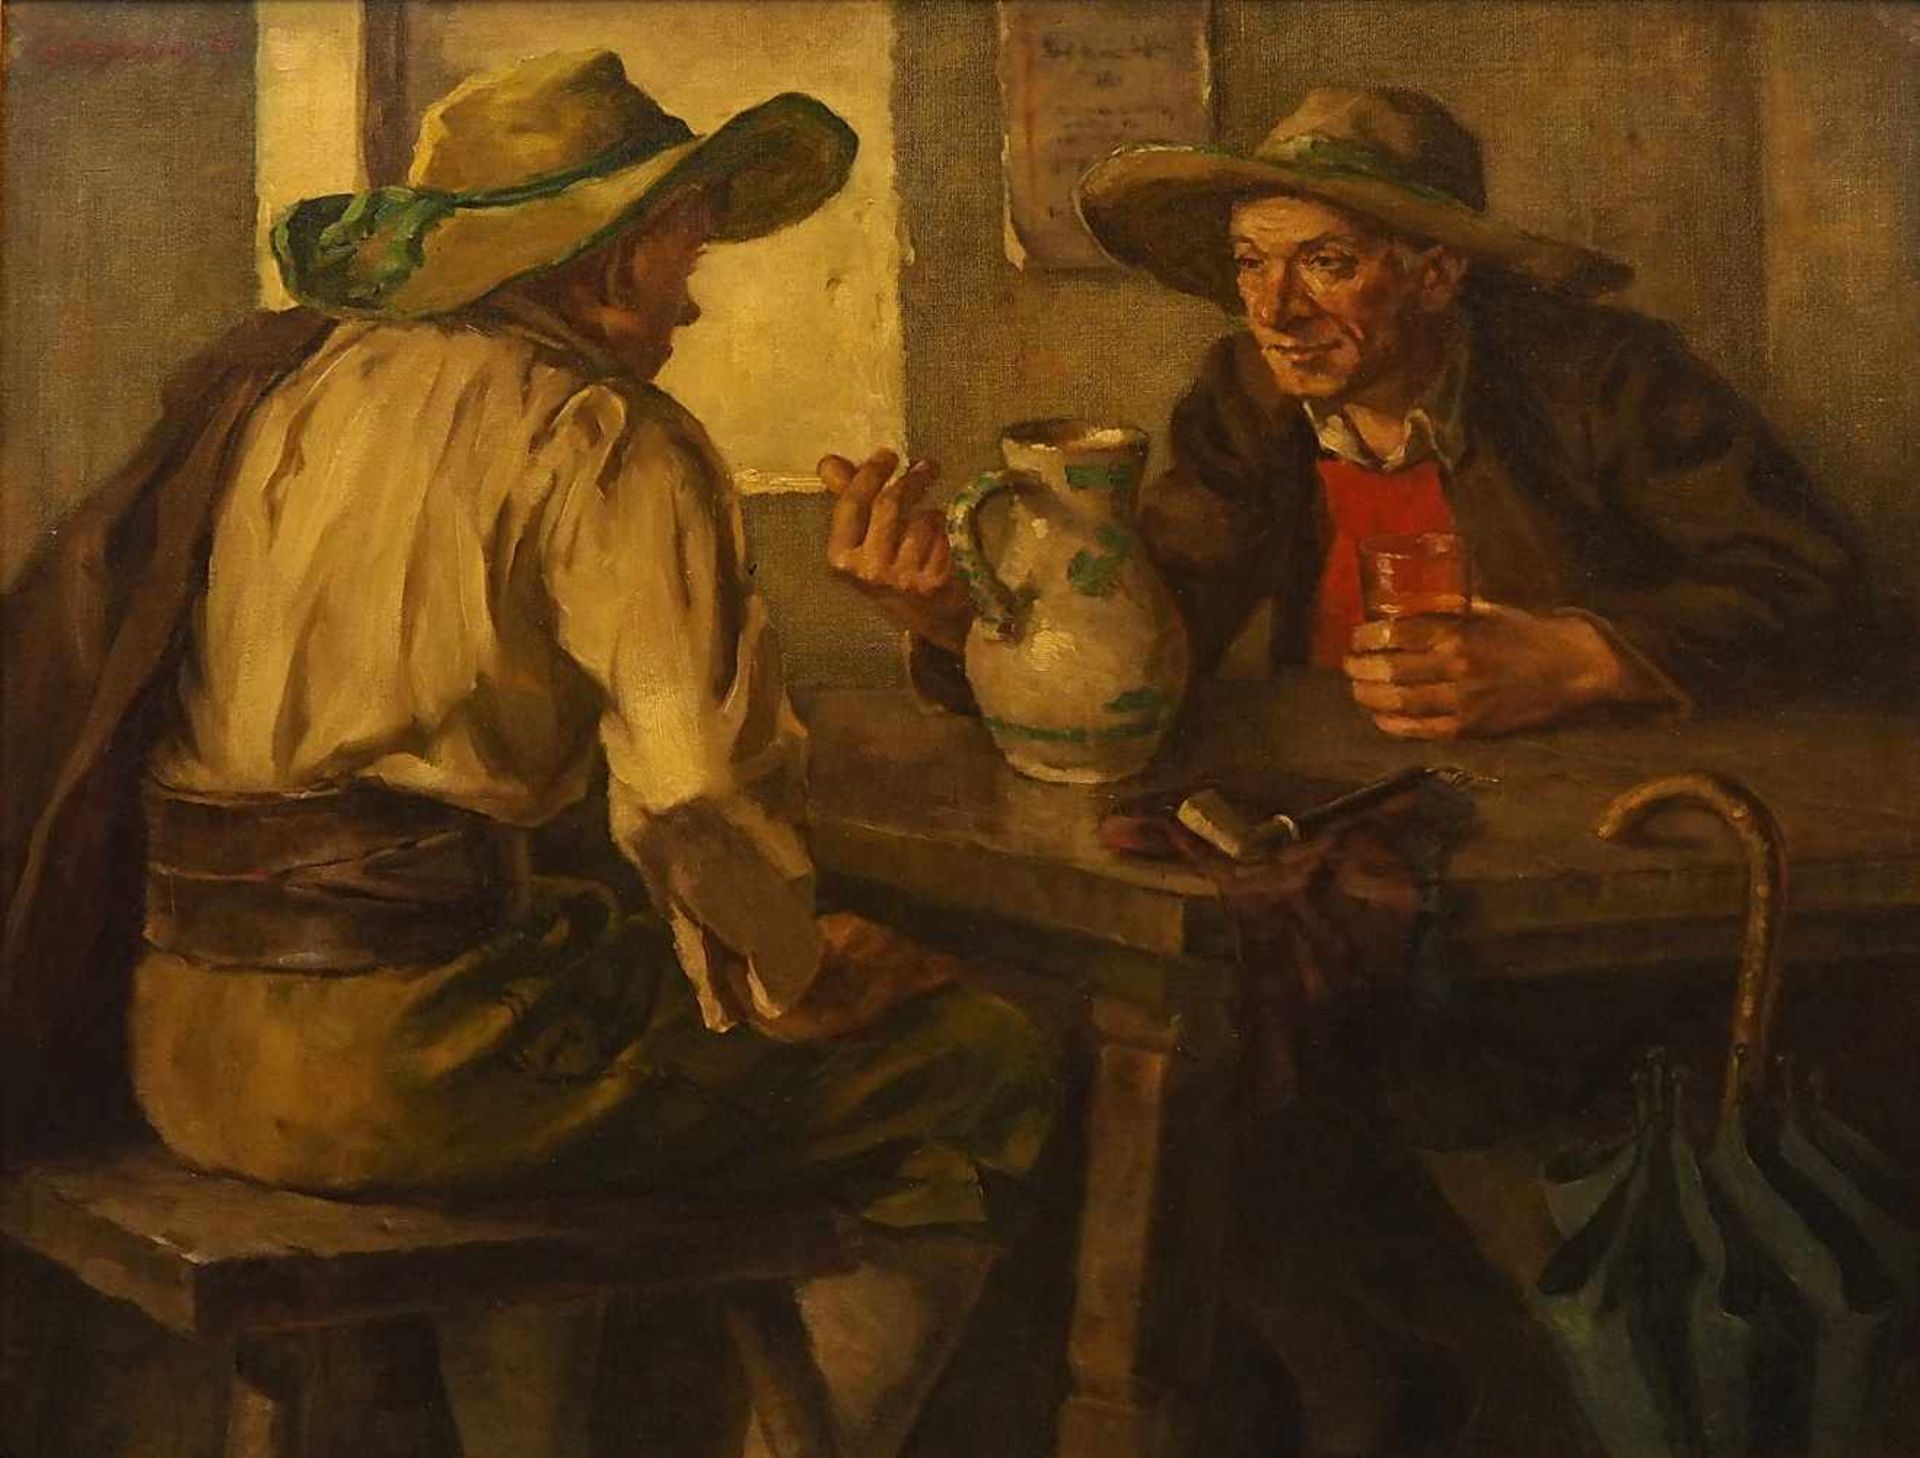 1 Ölgemälde "Bauern im Gespräch" L.o. signiert M. PISTORIUS(wohl Maximilian Friedrich P. 1894-1960),